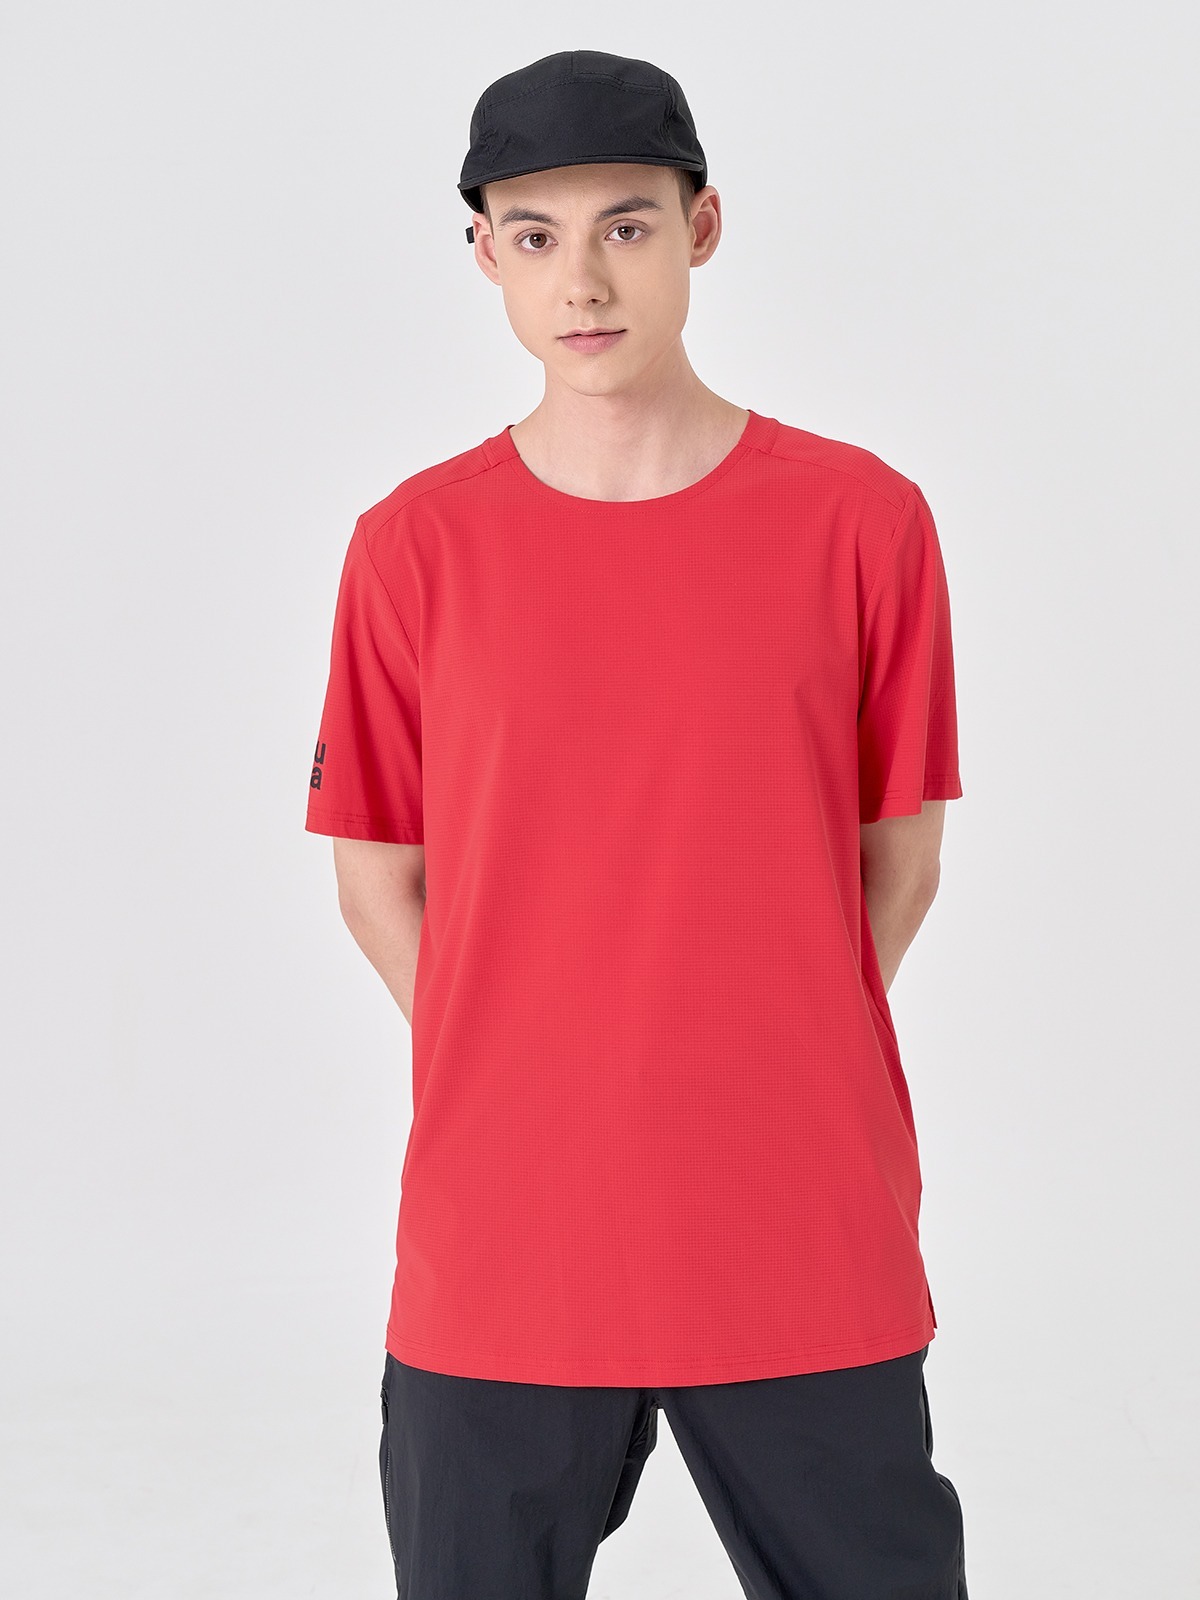 메쉬 우븐 반팔 티셔츠 RED